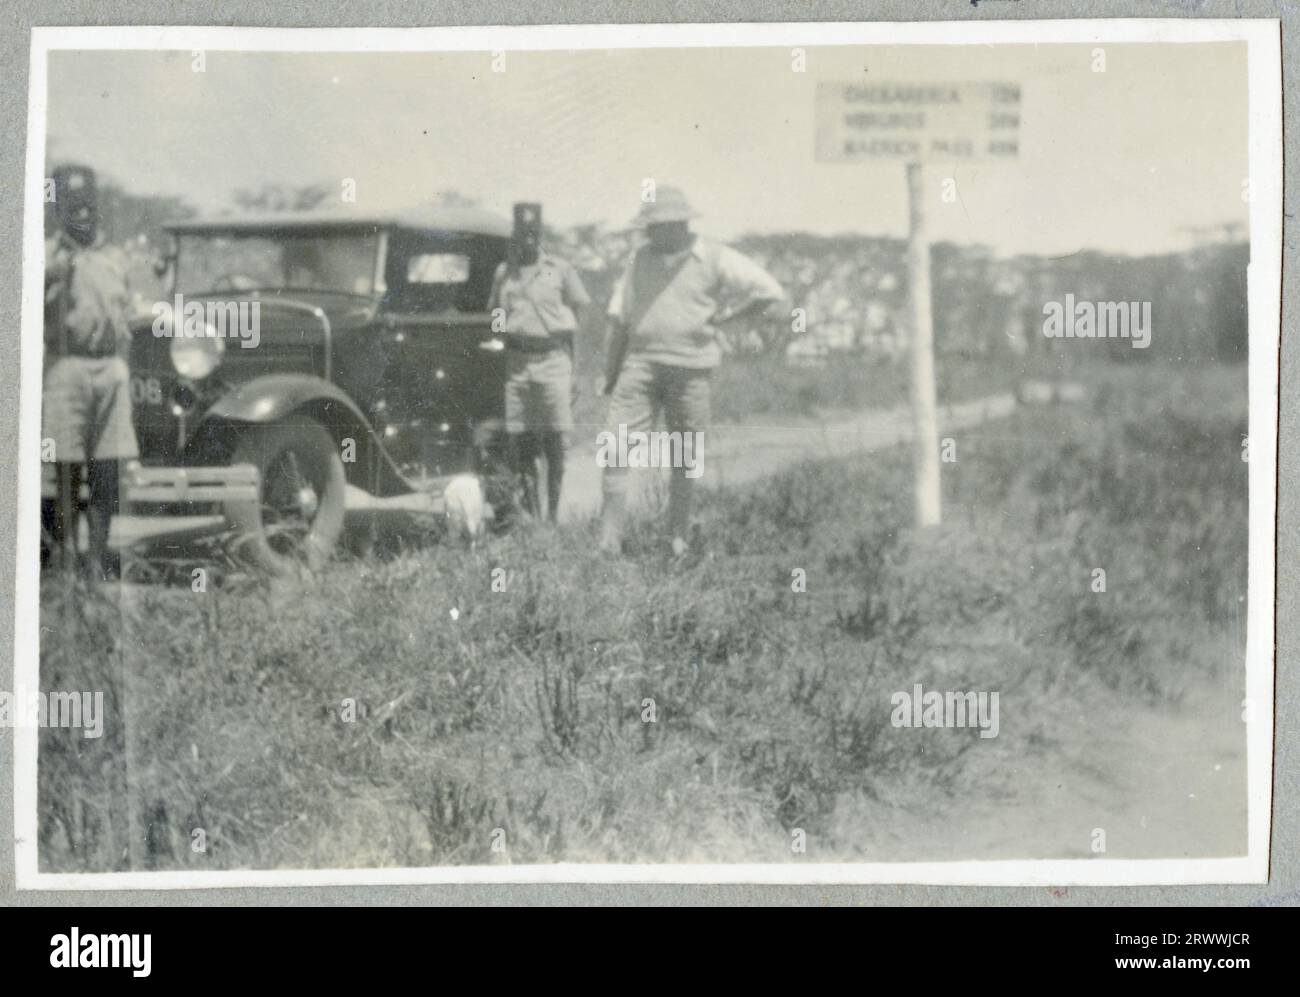 M. Bungey appuyé sur le côté d'une voiture noire garée sur le côté de la route. Derrière lui se trouve un poteau indicateur. Légende originale du manuscrit : sur la route dans le pays Turkana, en route pour Kapenguria. H.Q. pour S&W Turkana. Banque D'Images